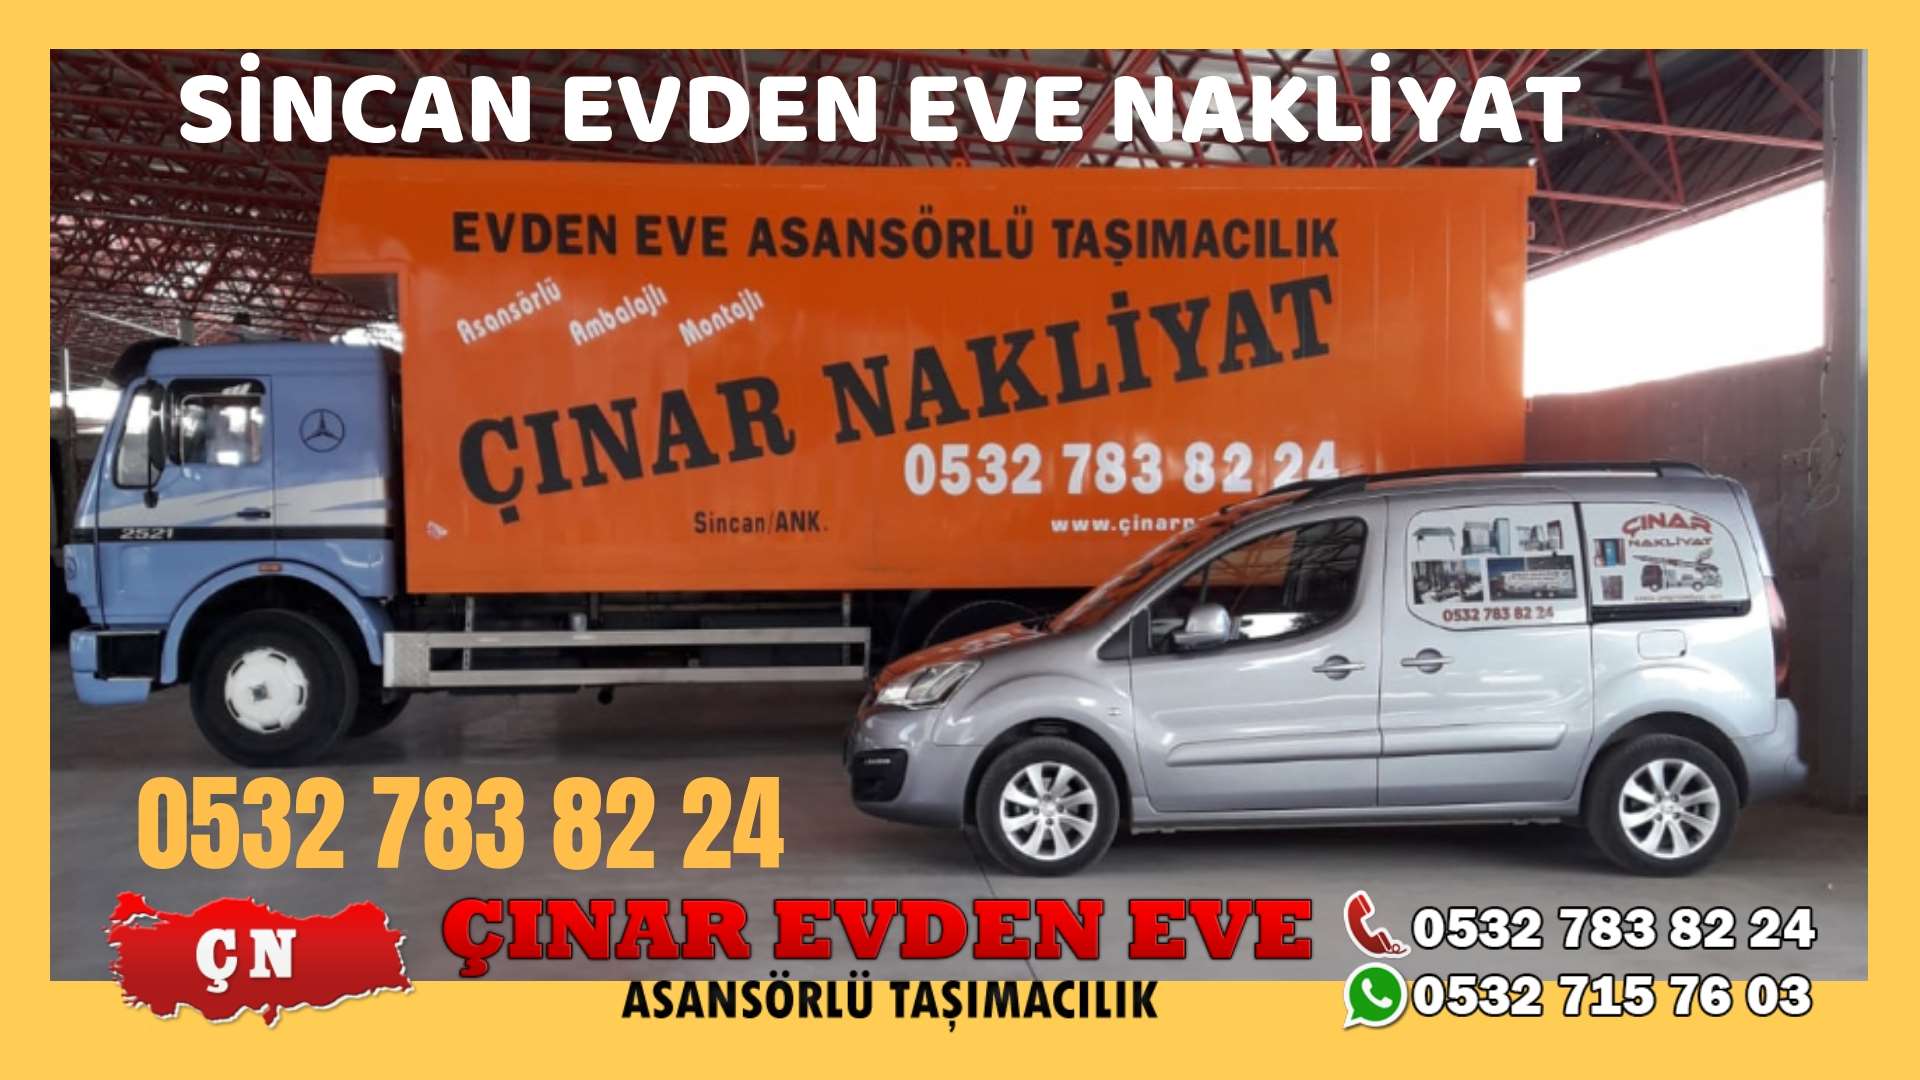 Ankara Akyurt Evden eve ev taşıma sincan nakliye fiyatları 0532 715 76 03